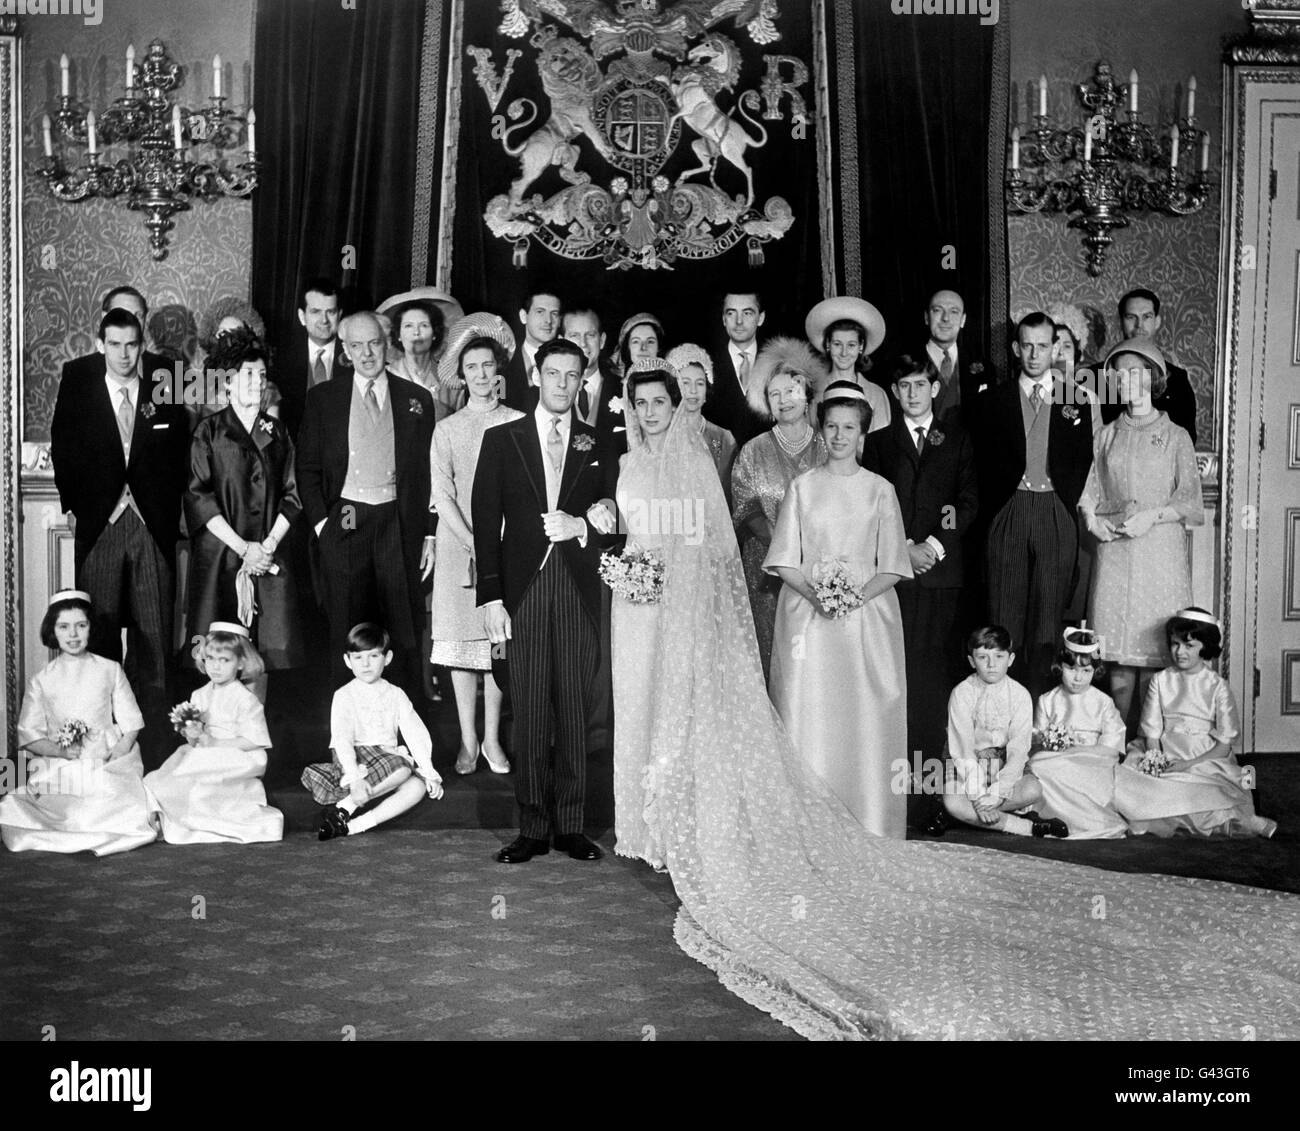 El grupo de bodas en el Palacio de San James, Londres, durante la recepción después de la boda de la princesa Alexandra y Angus Ogulvy. De izquierda a derecha, fila trasera; Peregrine Fairfax, Lady Balfour, Iain Tennant, Lady Lloyd, James Ogilvy, Lady Ogilvy, Lord Ogilvy Sra. J Ogilvy, Lord Lloyd, Lady Margaret Tennant y Peter Balfour. Centro, de izquierda a derecha; el príncipe Miguel de Kent, la condesa de Airlie y el conde de Airlie (padres del novio), la princesa Marina, la duquesa de Kent (madre de la novia), el duque de Edimburgo, la reina, la reina madre, el príncipe de Gales, el duque y la duquesa de Kent. Foto de stock